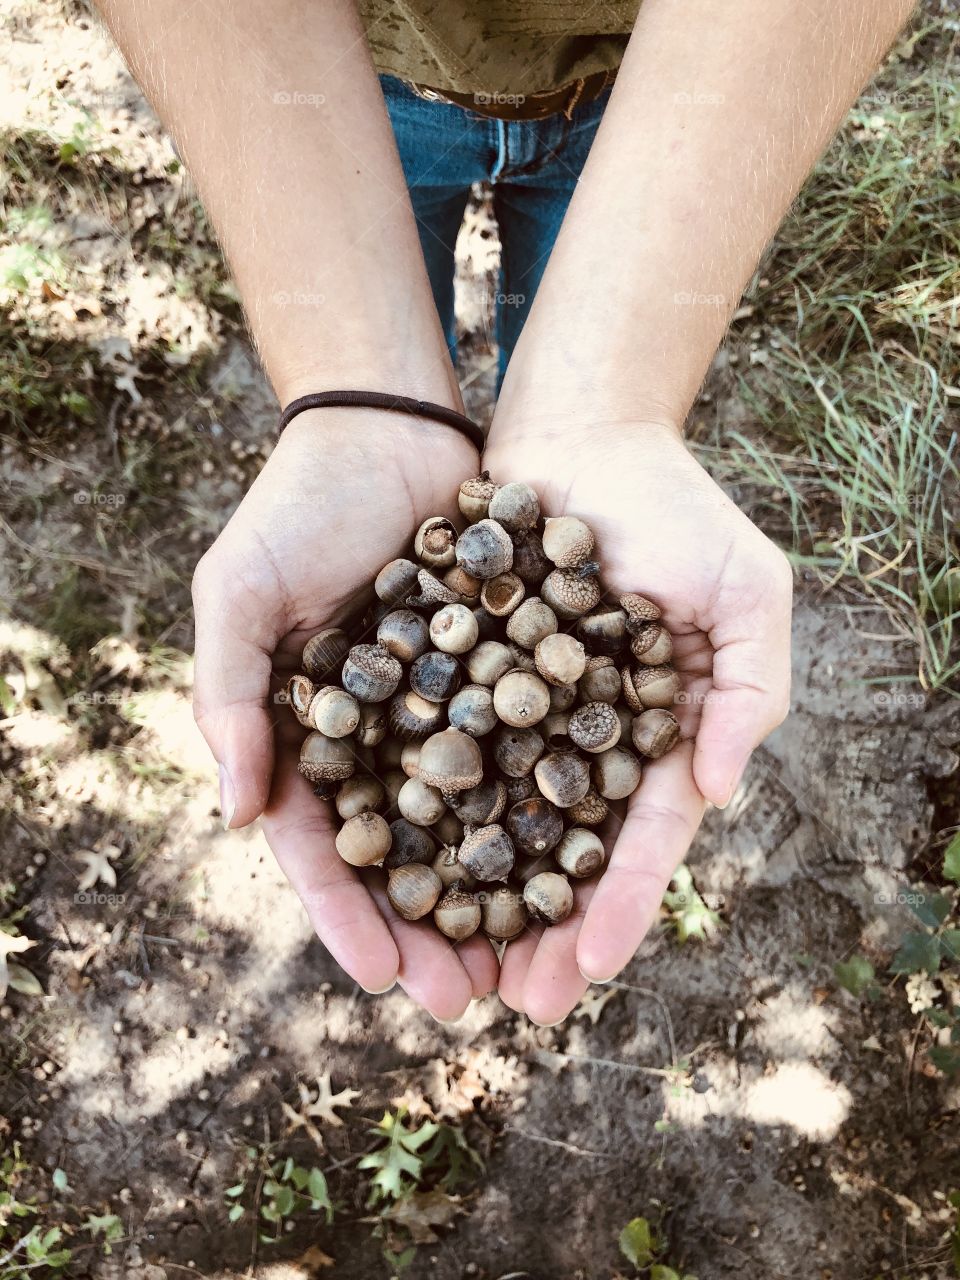 A handful of golden brown acorns.